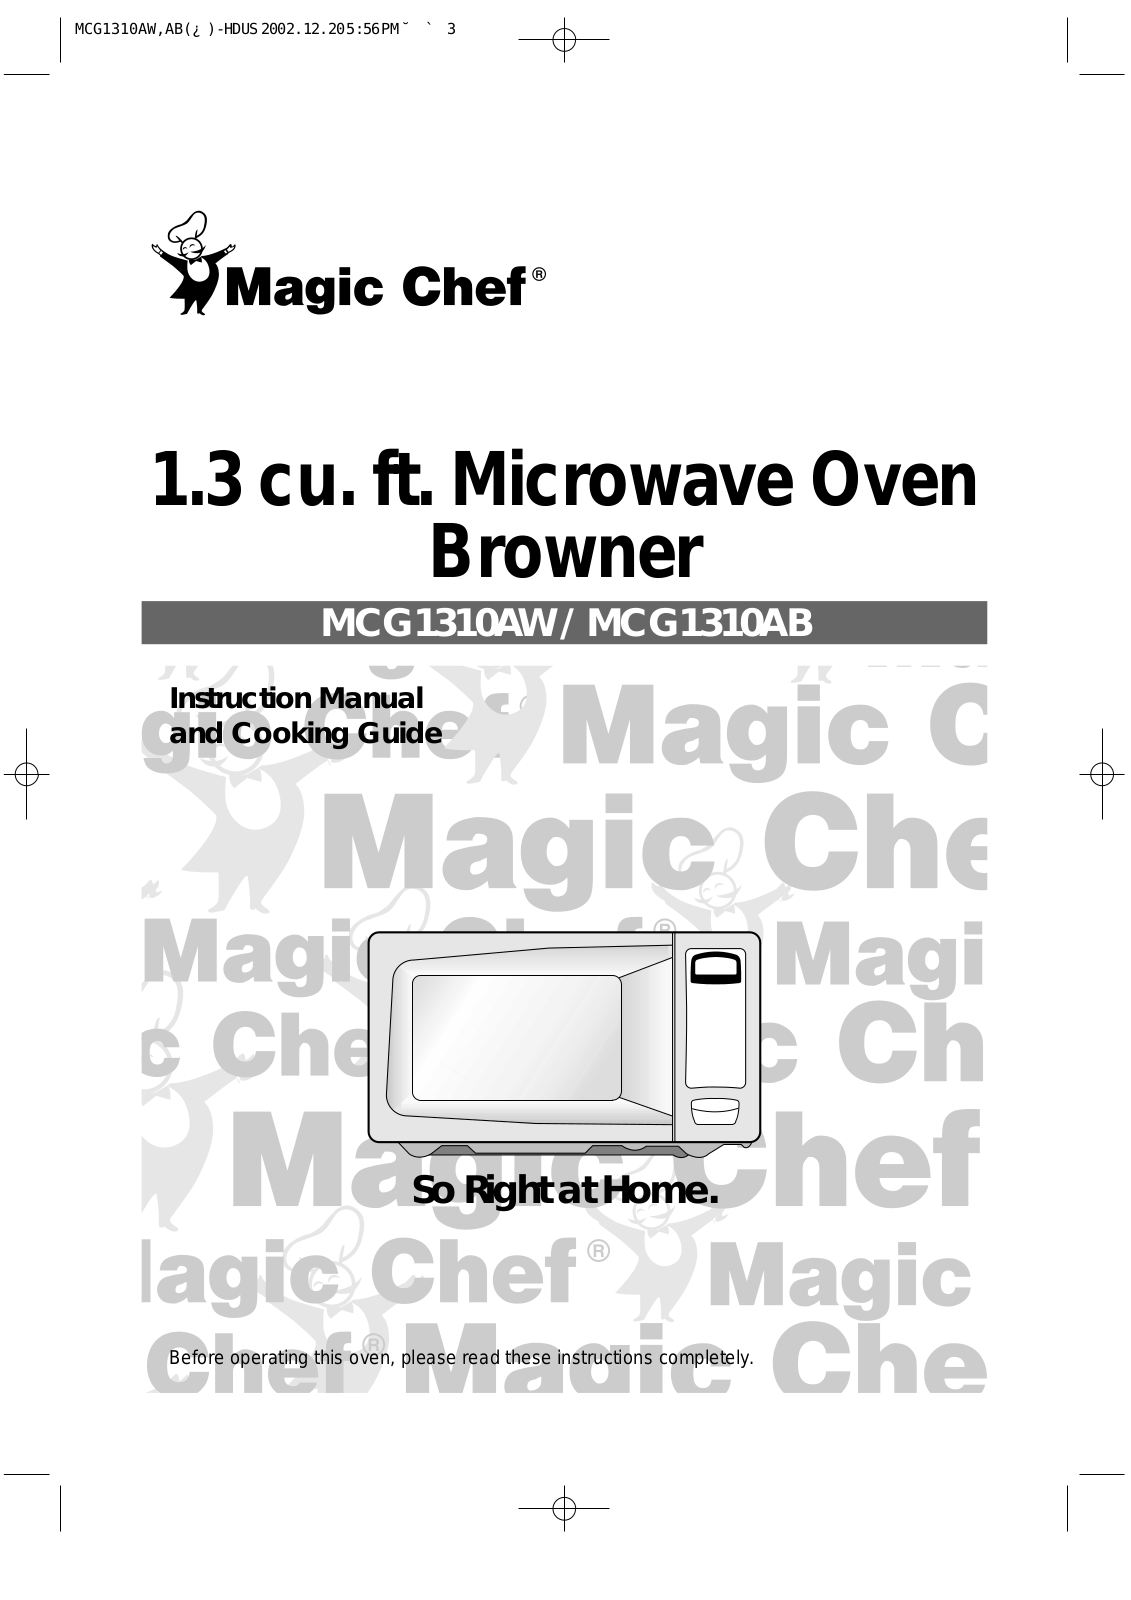 Daewoo MCG1310AW User Manual